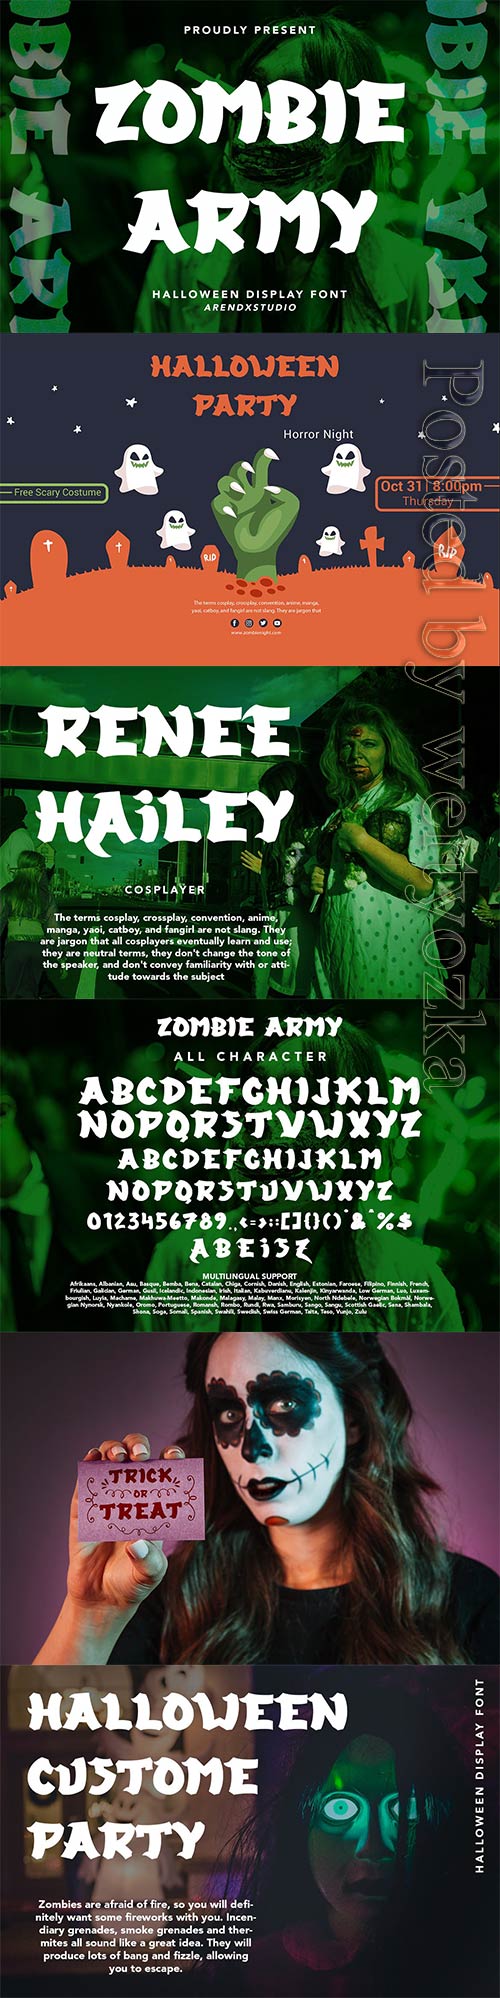 Zombie Army - Halloween Display Font -DBEPMHT